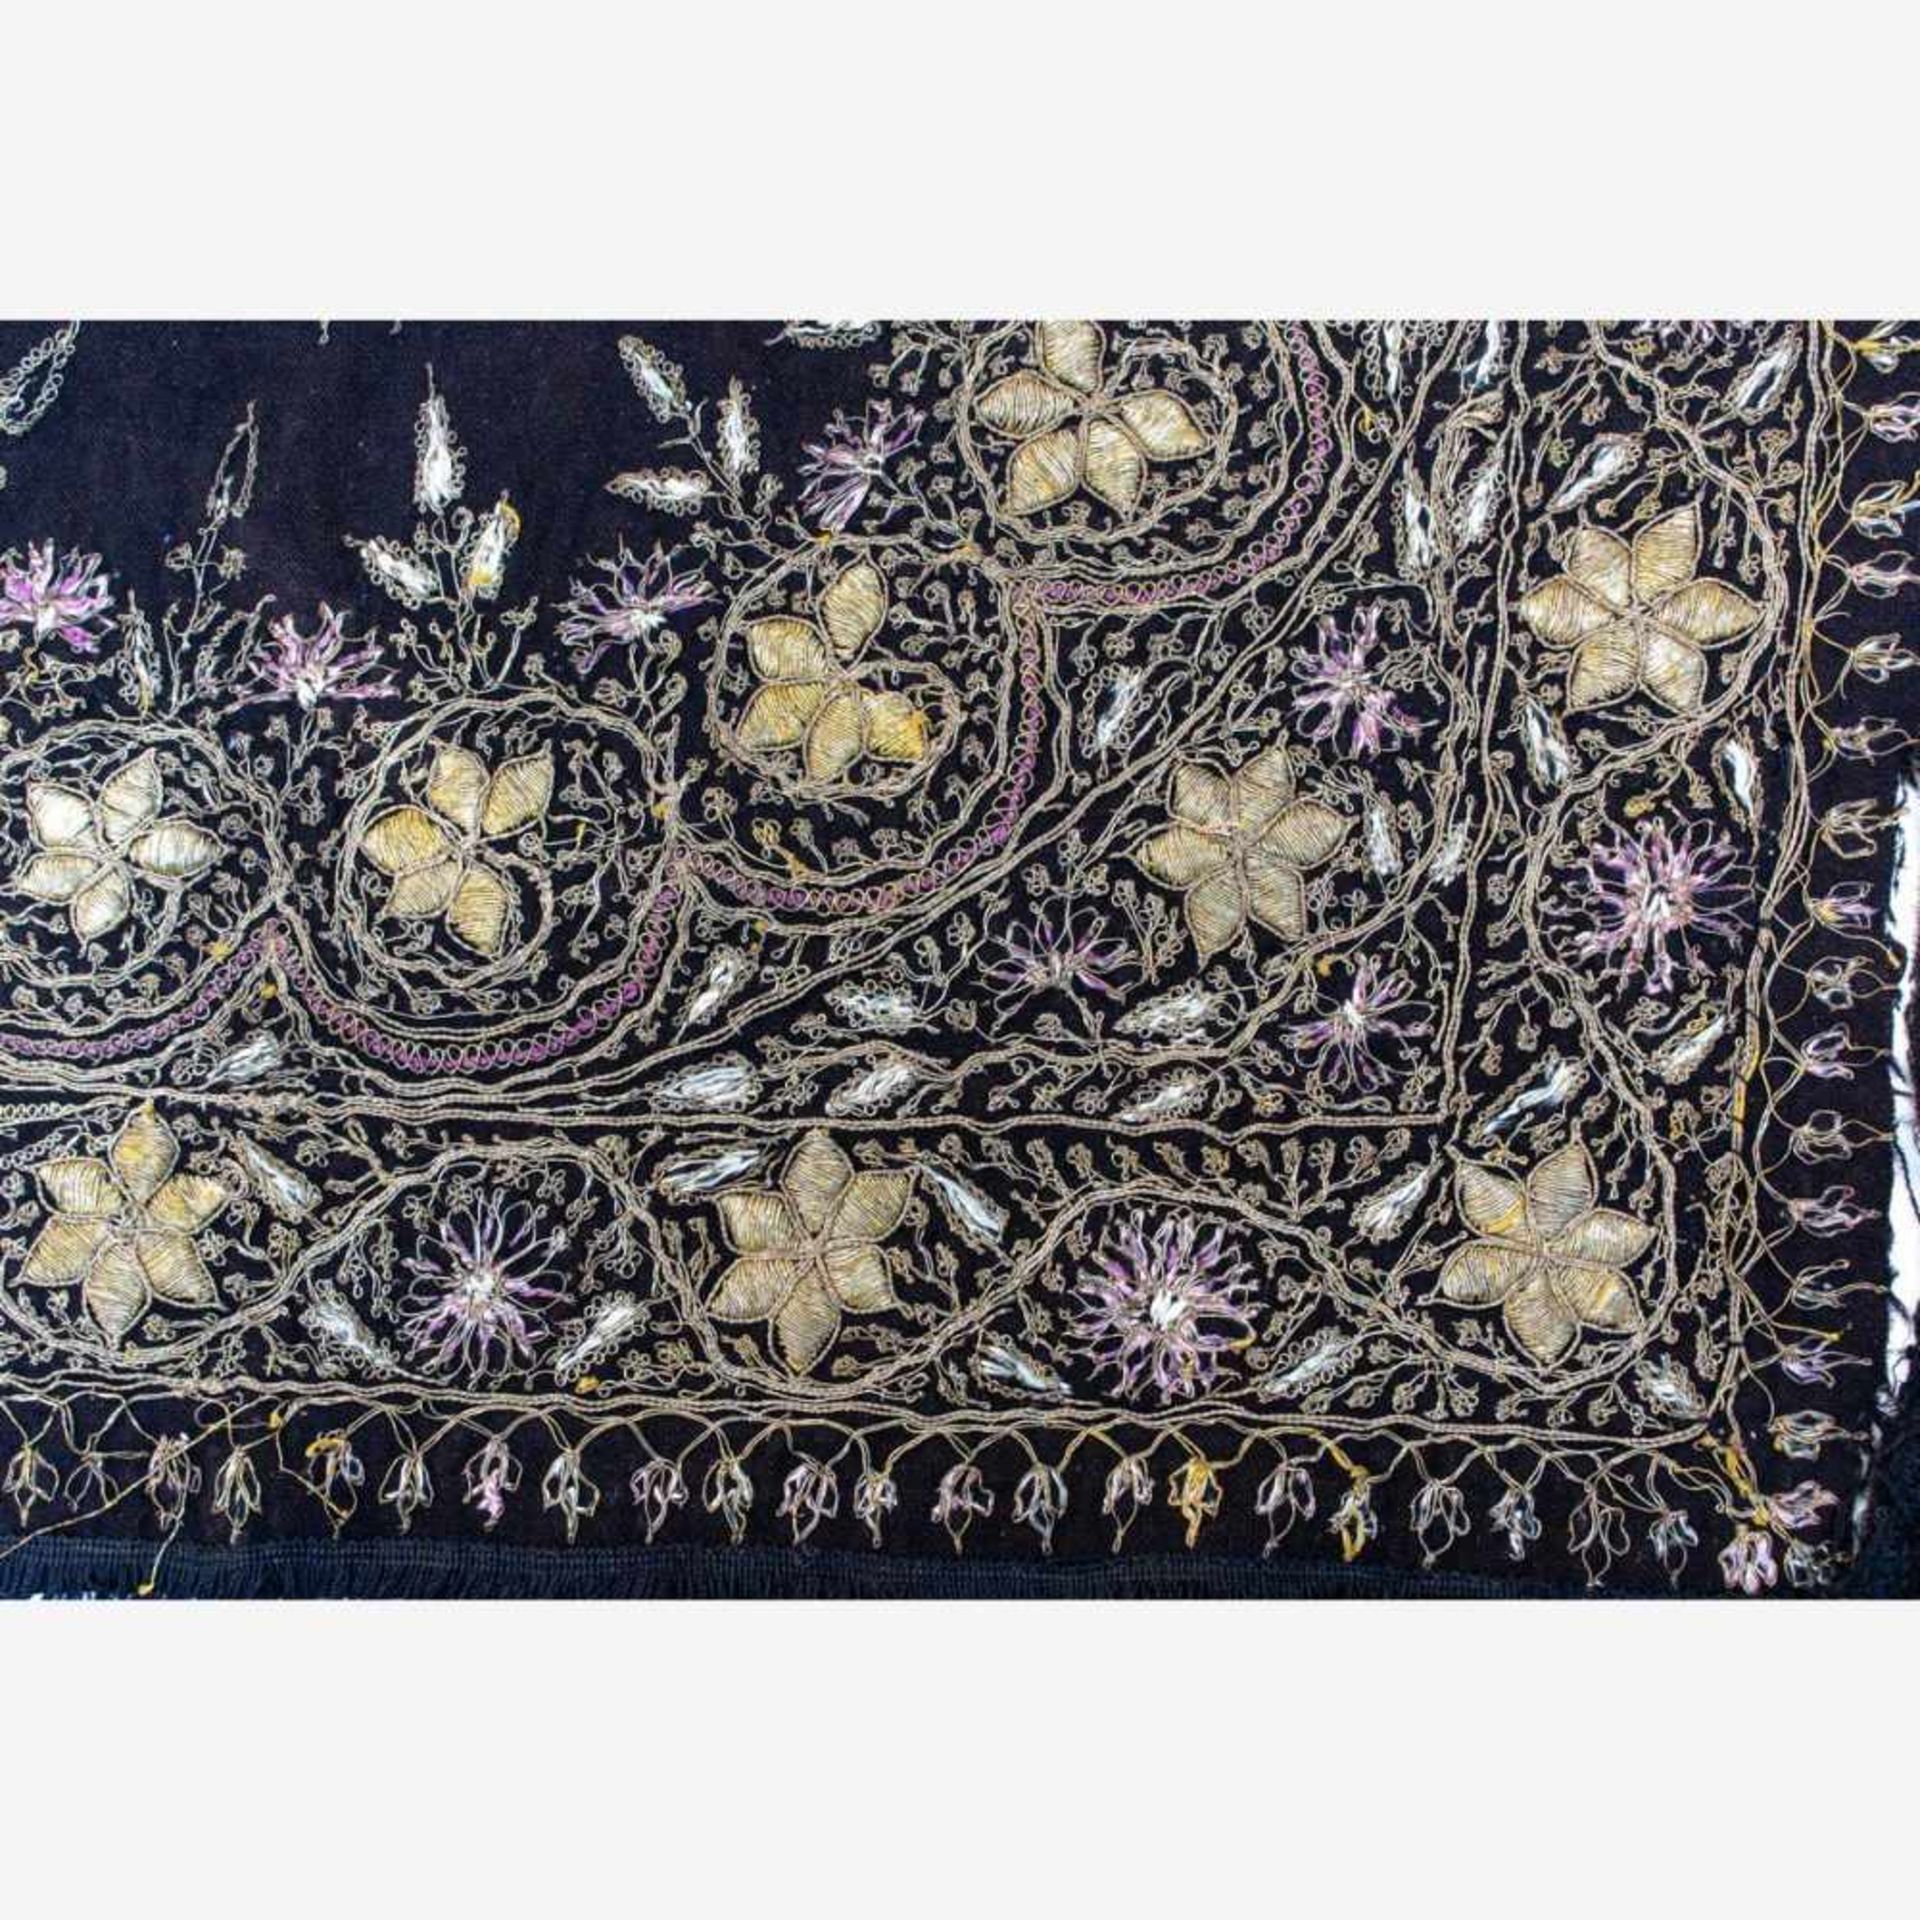 Orientalische Decke19. Jh.Goldbrokatstickerei und fliederfarbene Seidenfäden auf schwarzem Grund. - Bild 3 aus 4